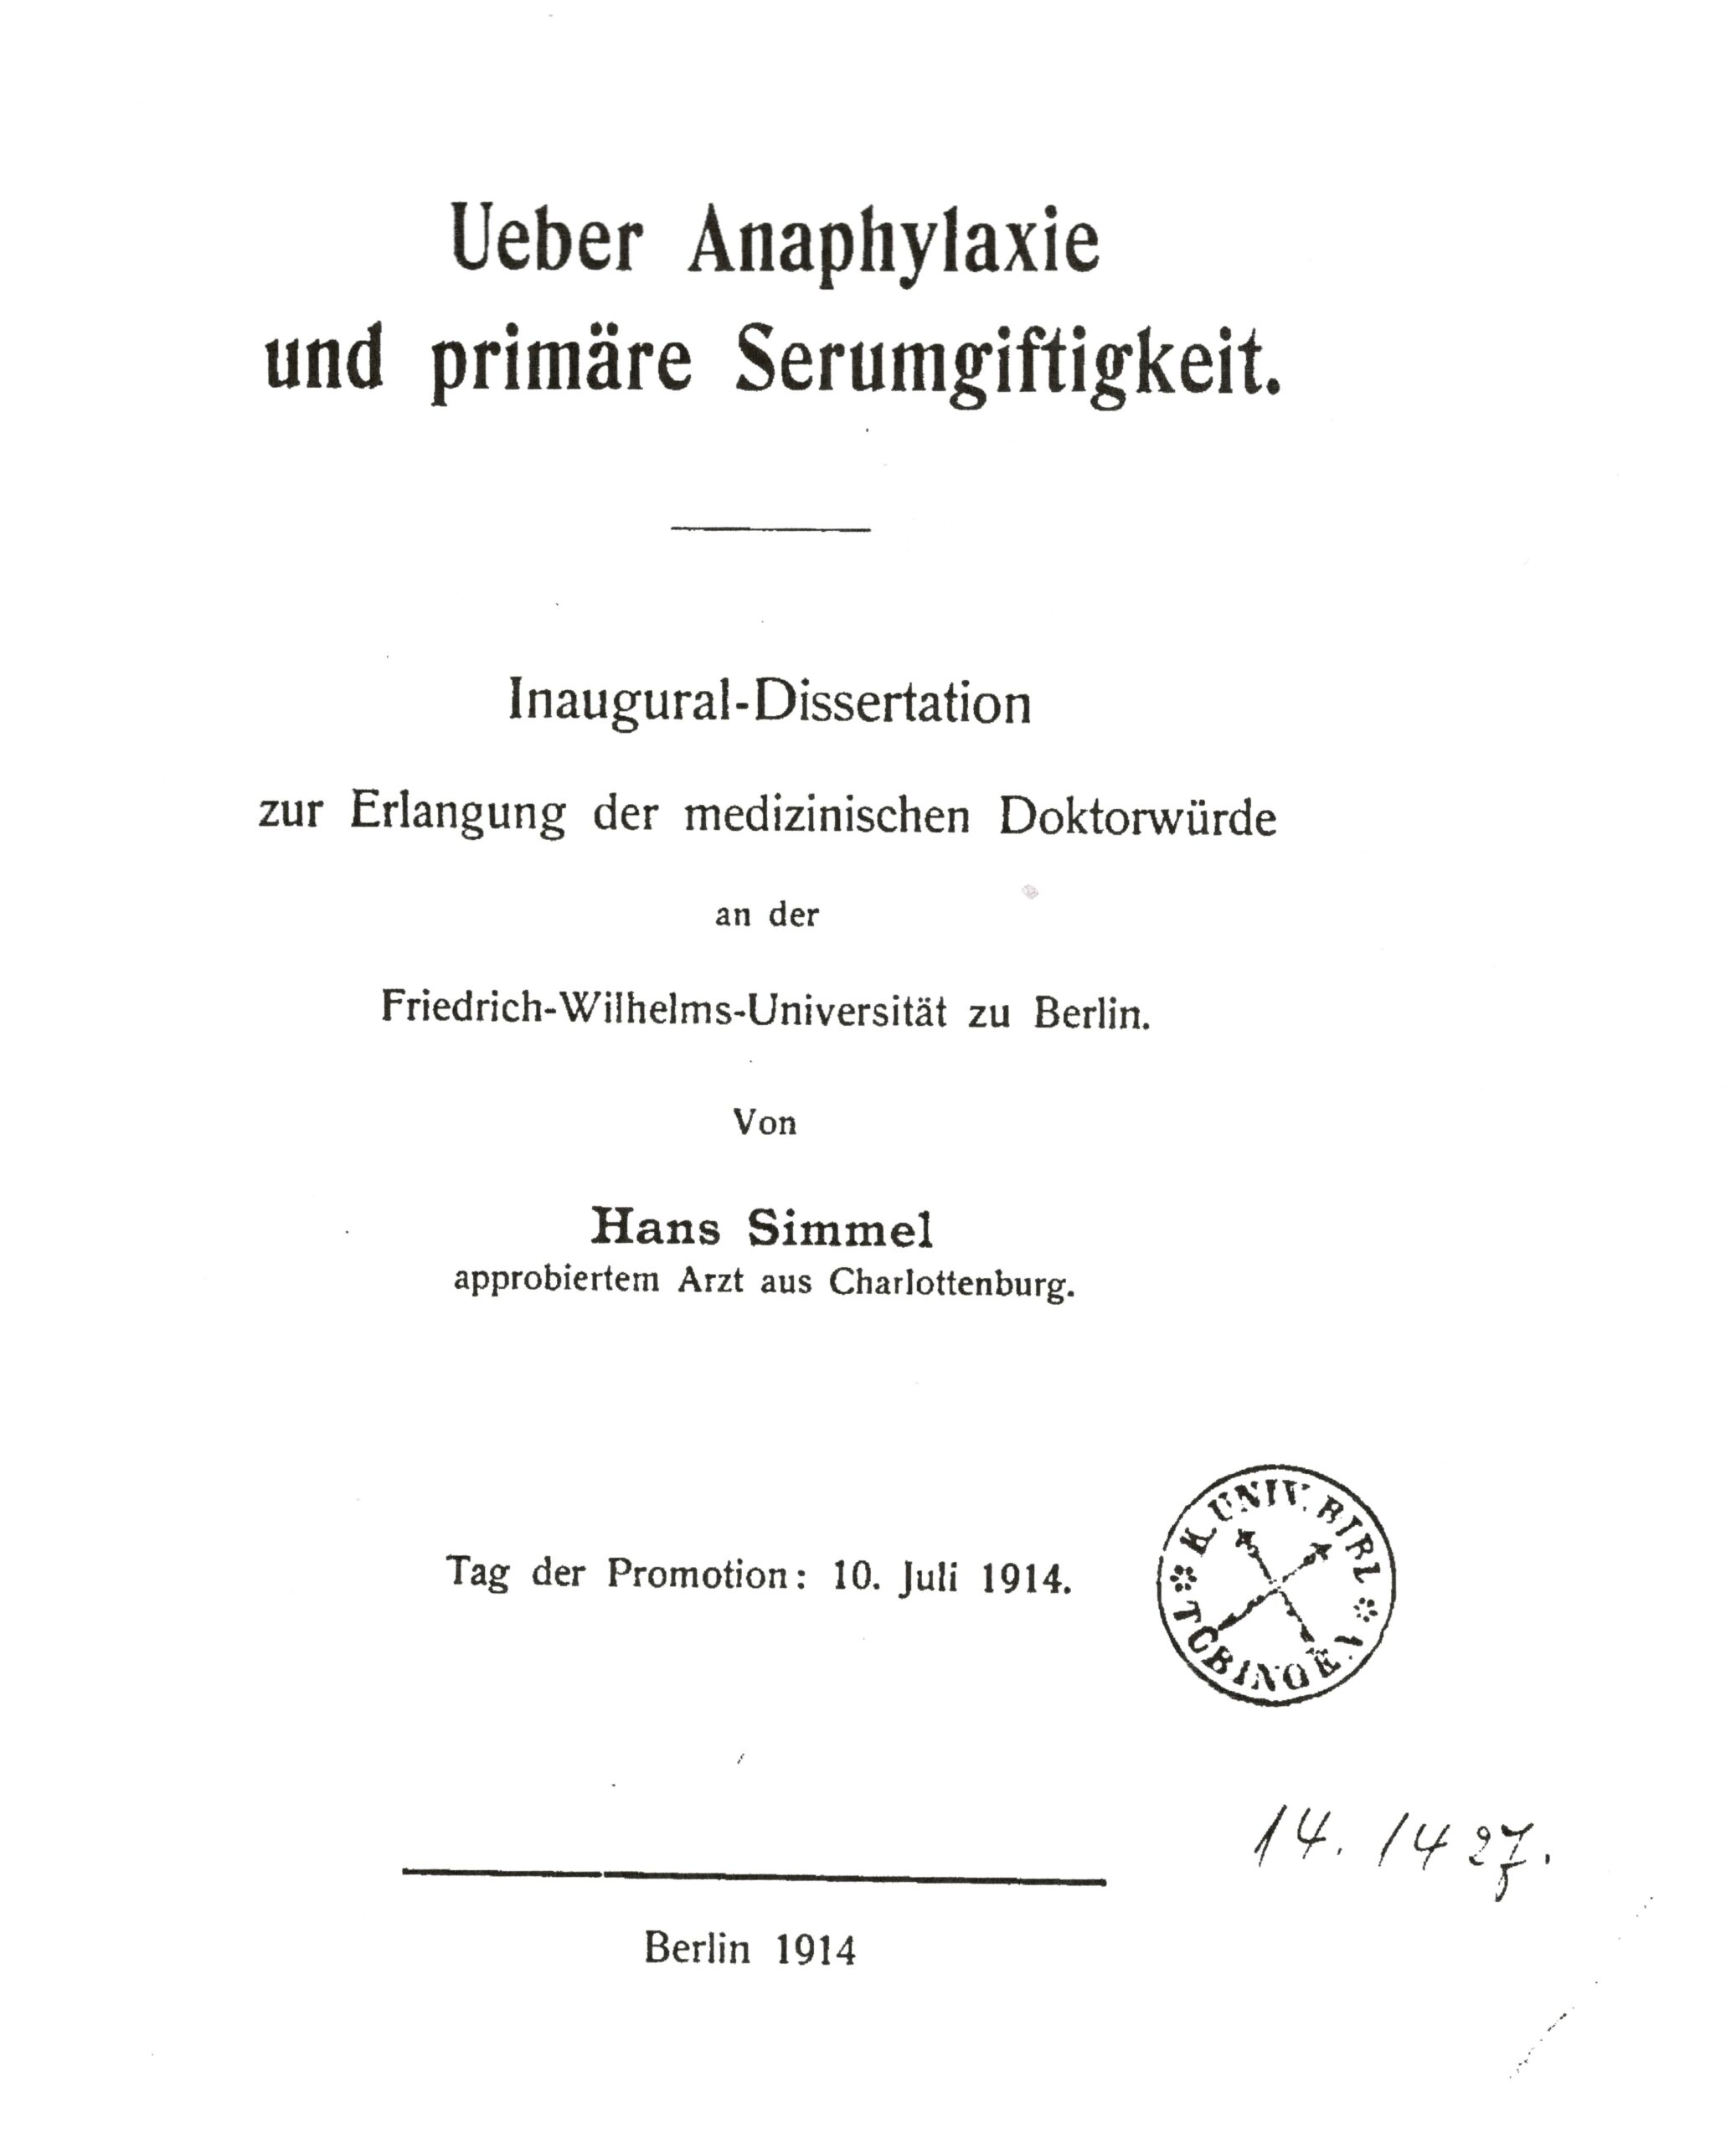 Dissertation, Berlin 1914